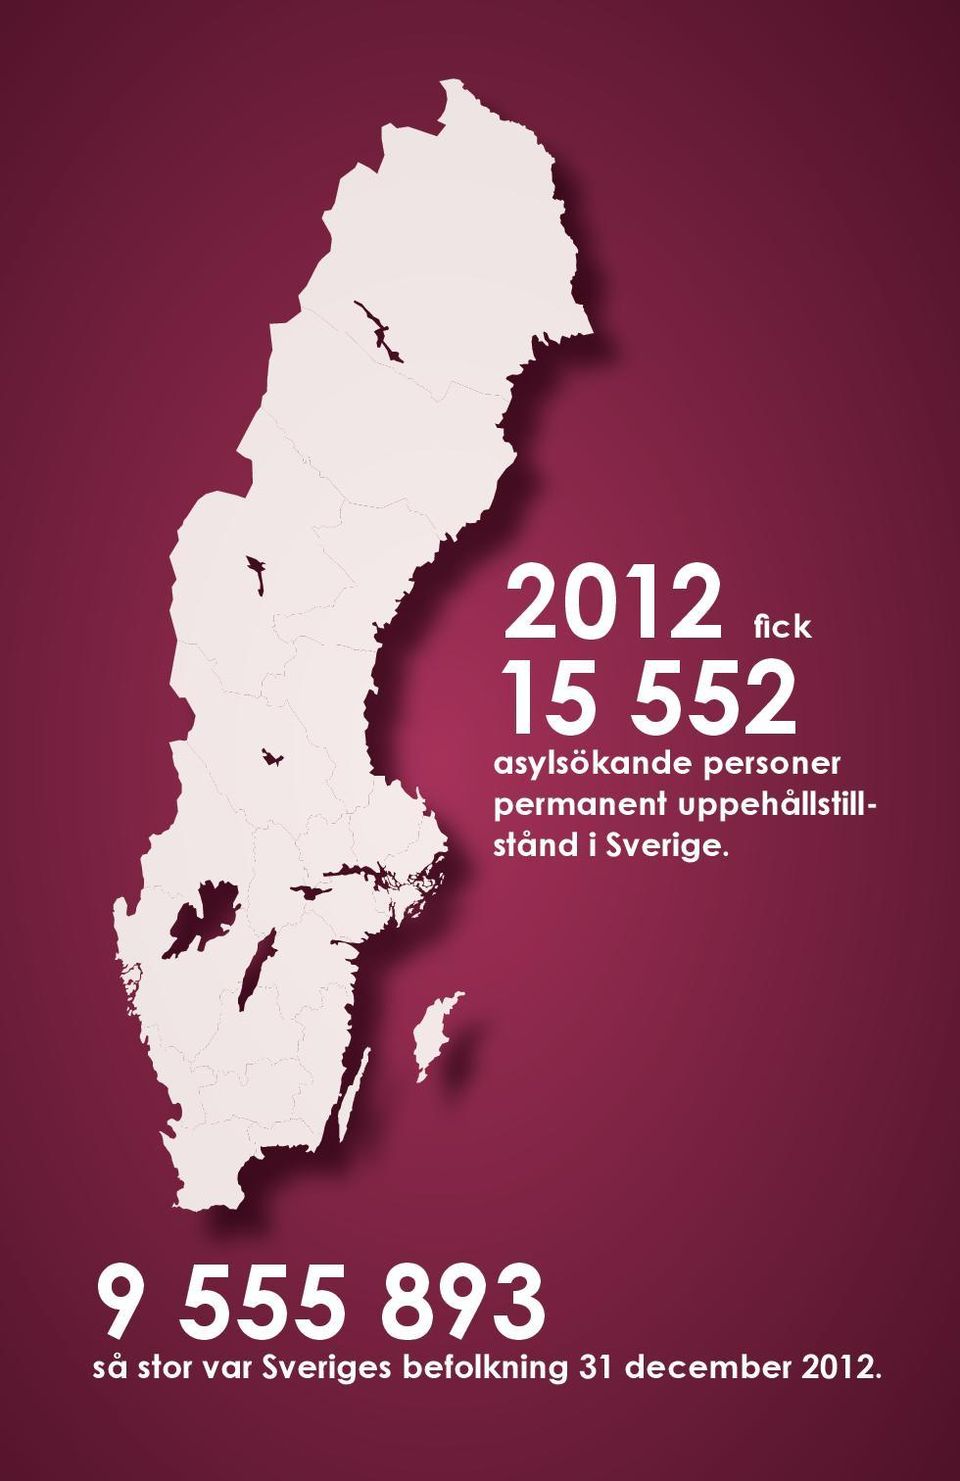 9 555 893 så stor var Sveriges befolkning